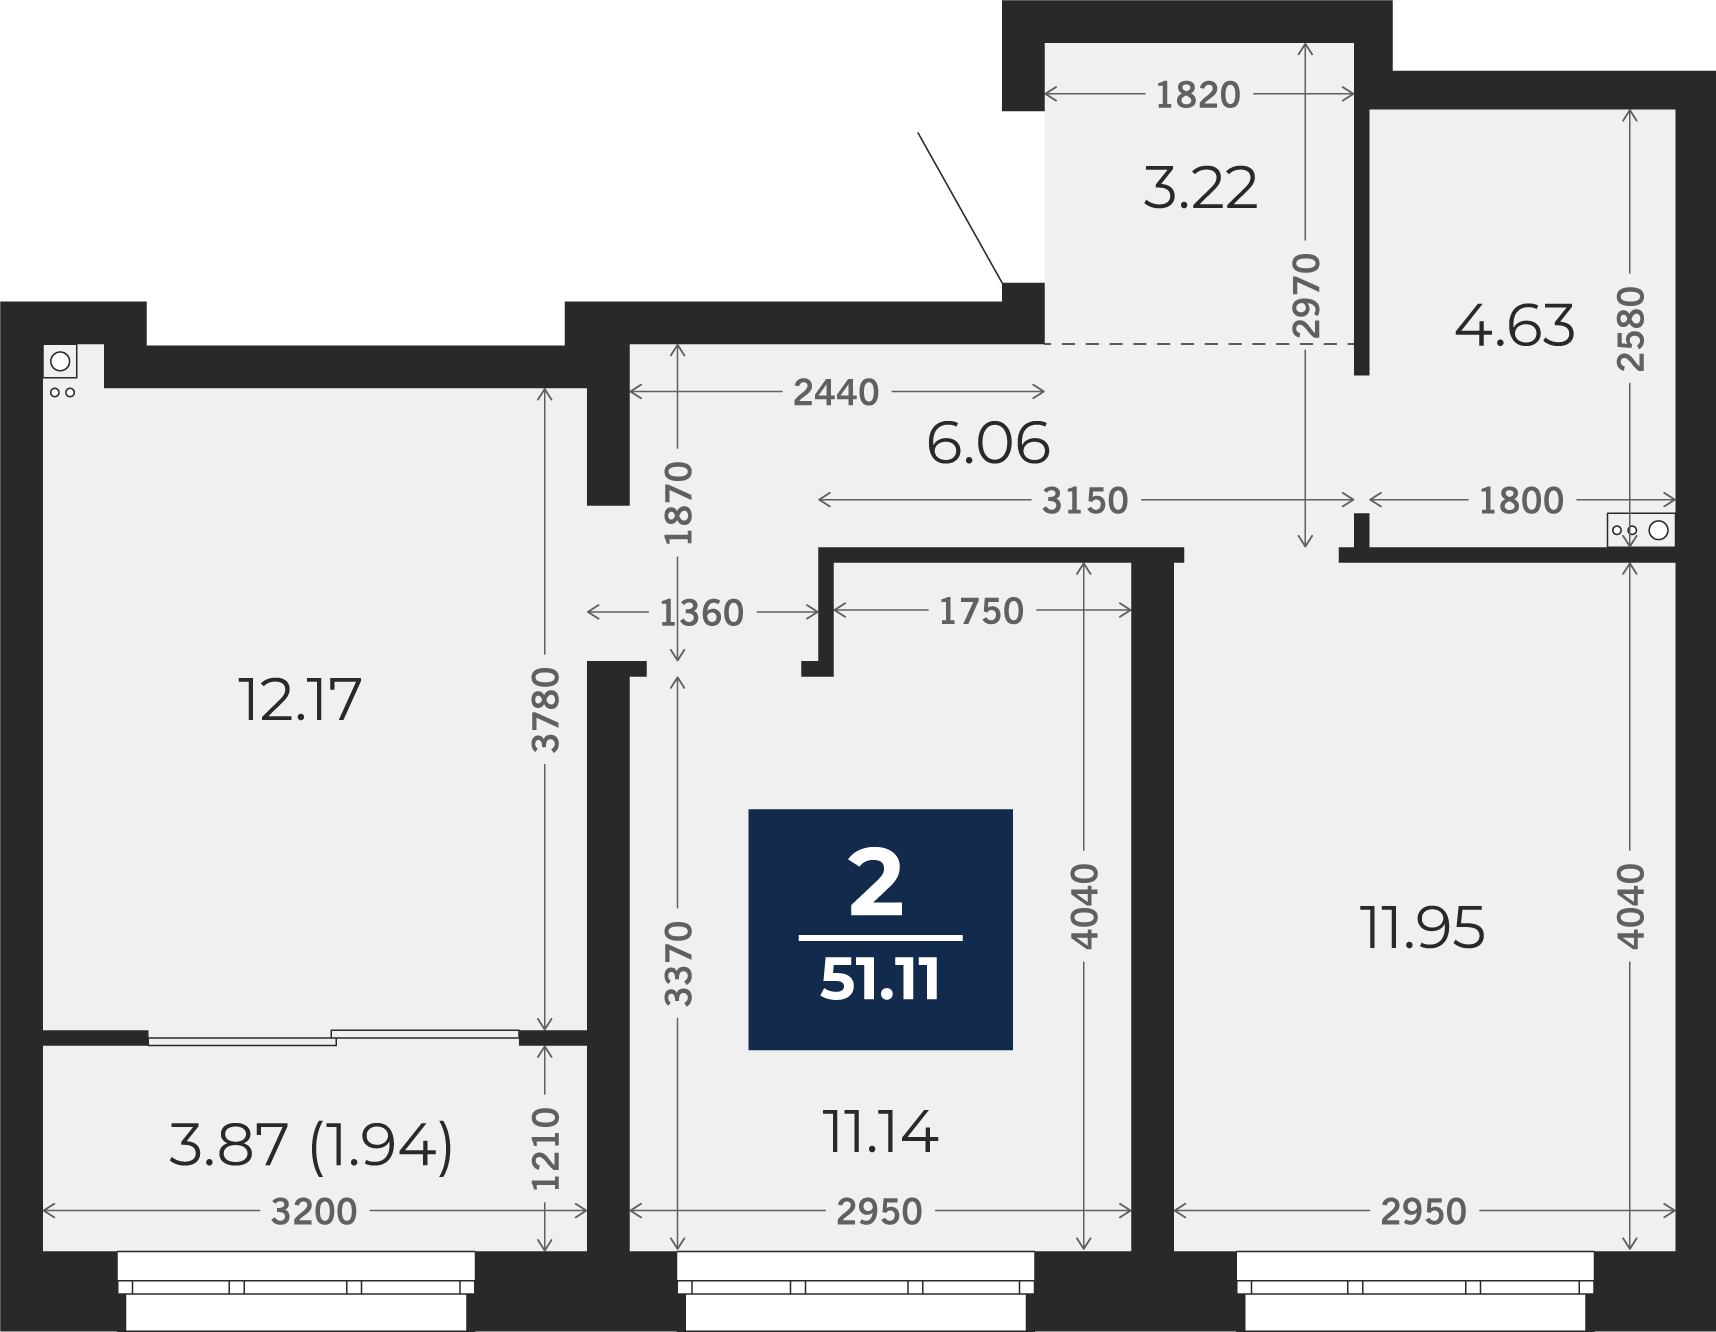 Квартира № 49, 2-комнатная, 51.11 кв. м, 11 этаж